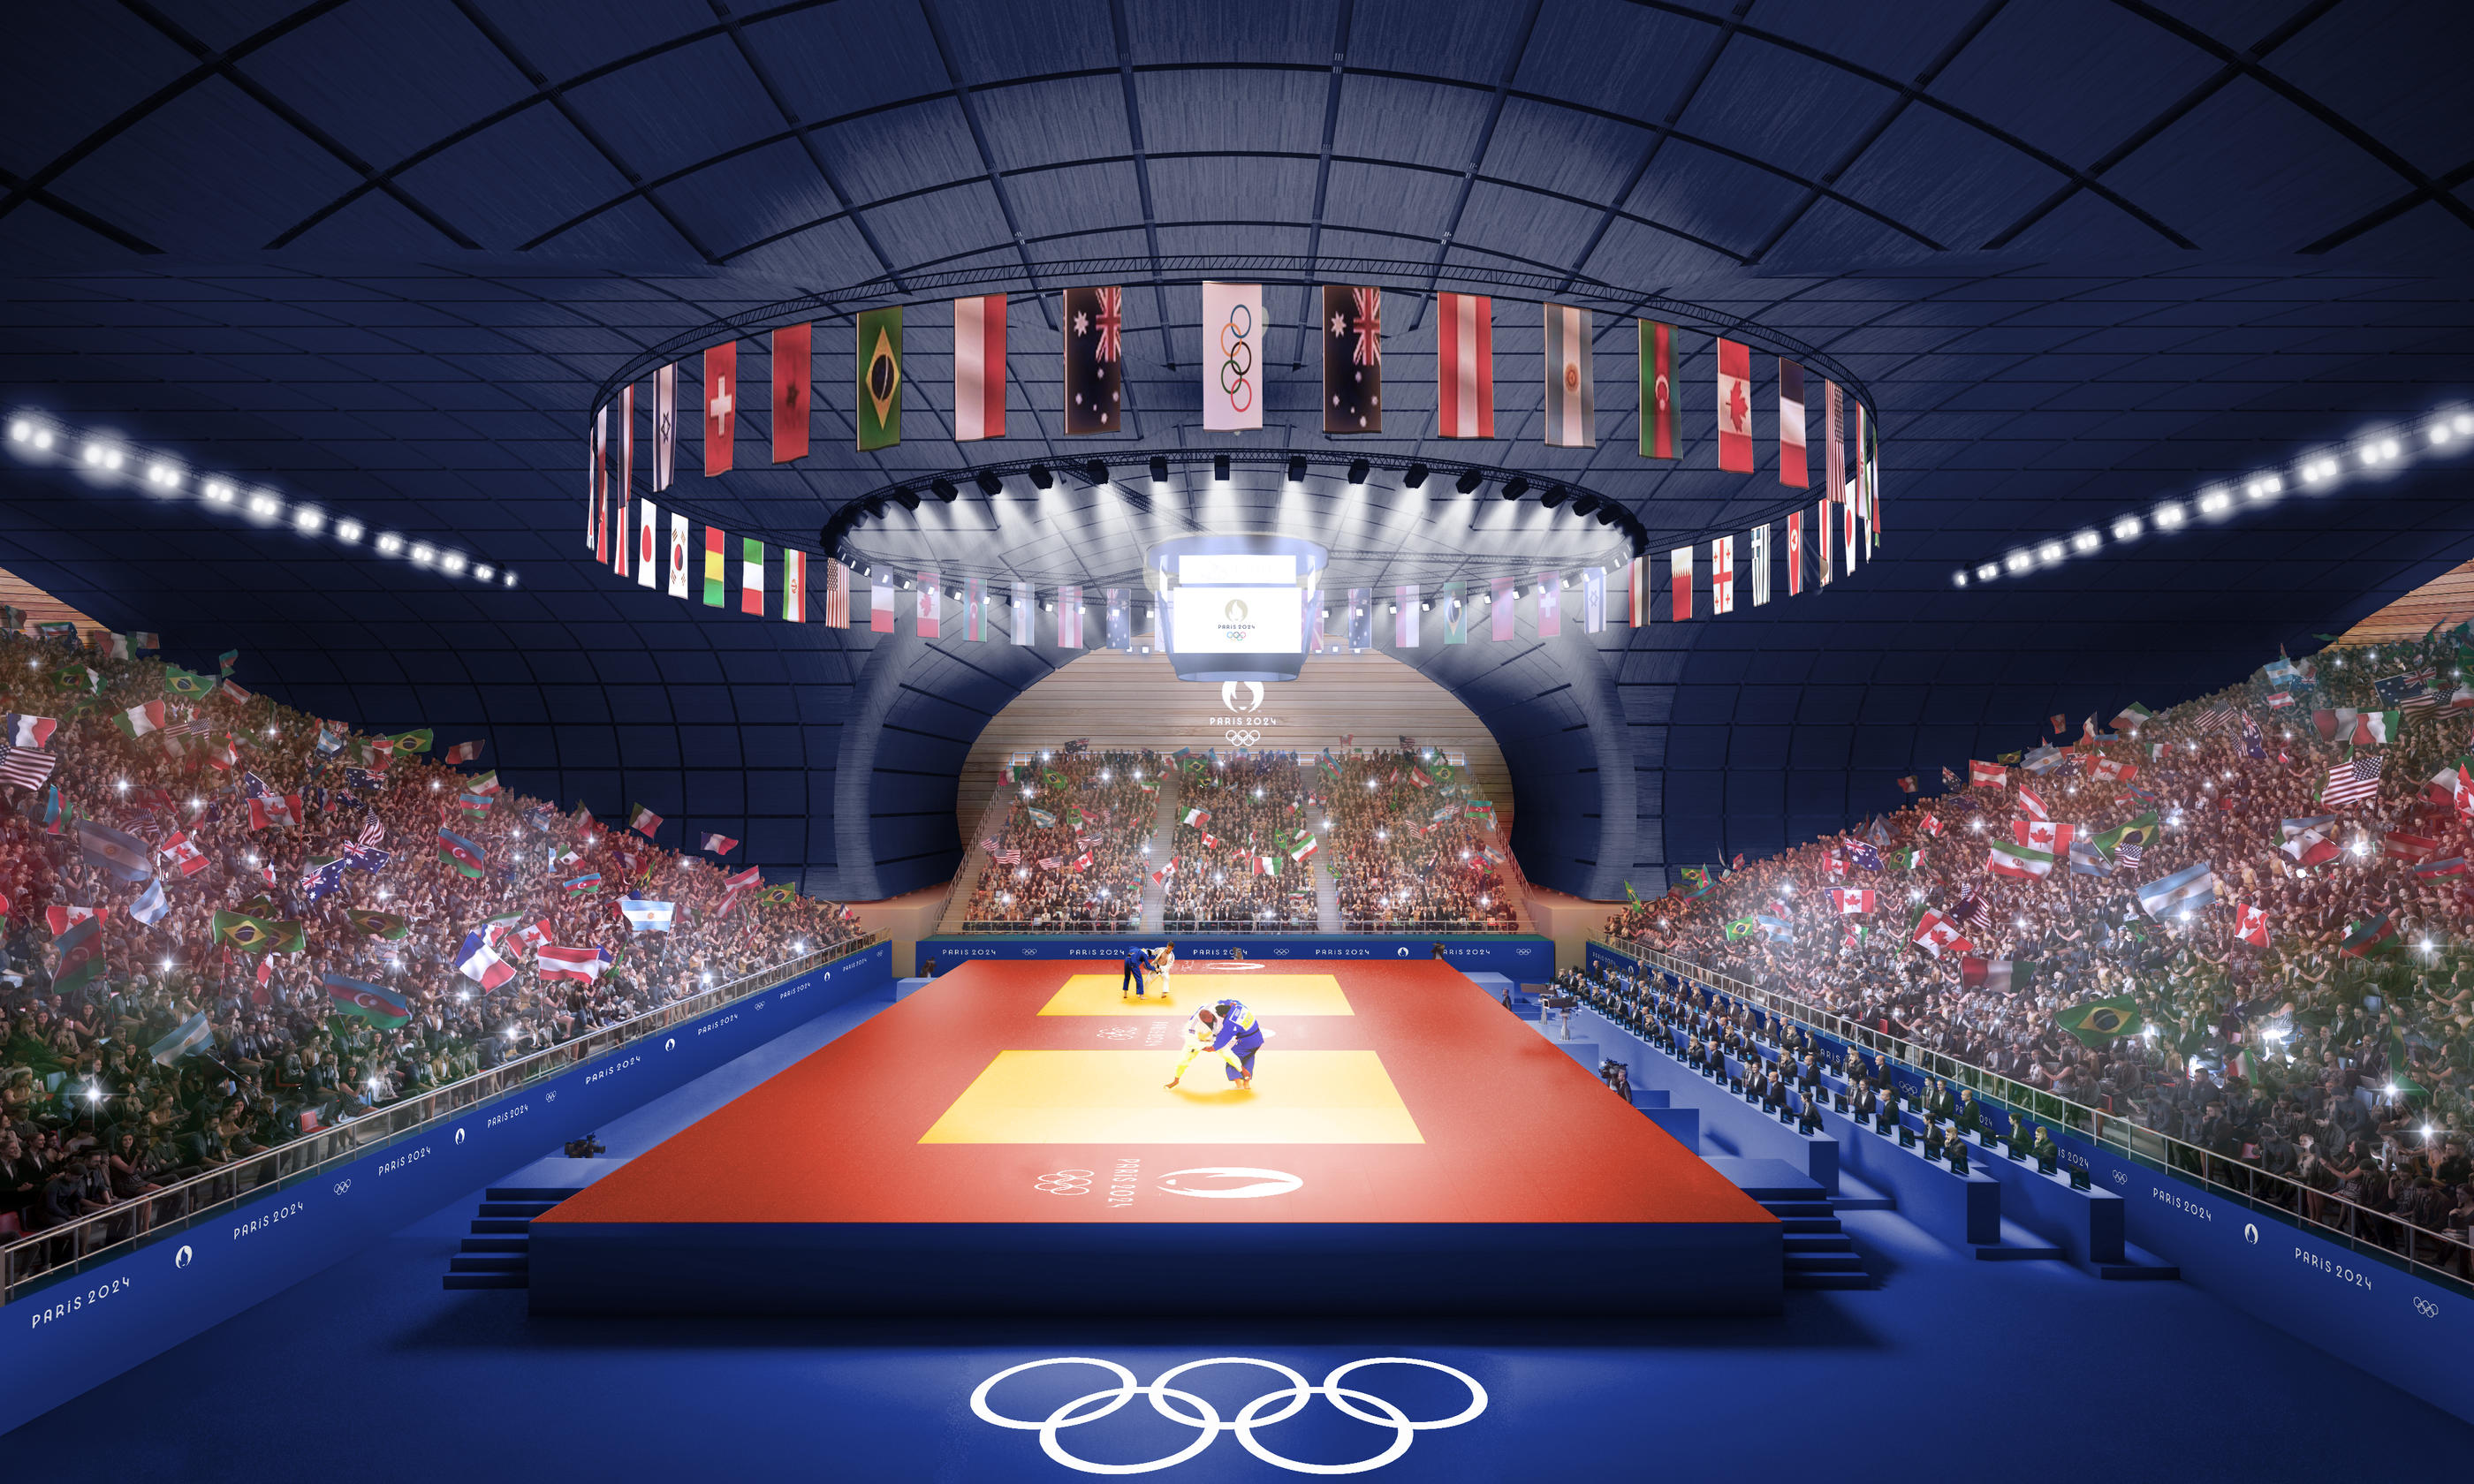 L'Arena Champ de Mars, qui est actuellement connue sous le nom de Grand Palais éphémère, accueillera les épreuves de judo, de lutte libre et de lutte gréco-romaine lors des JO de Paris 2024. Photo Paris 2024